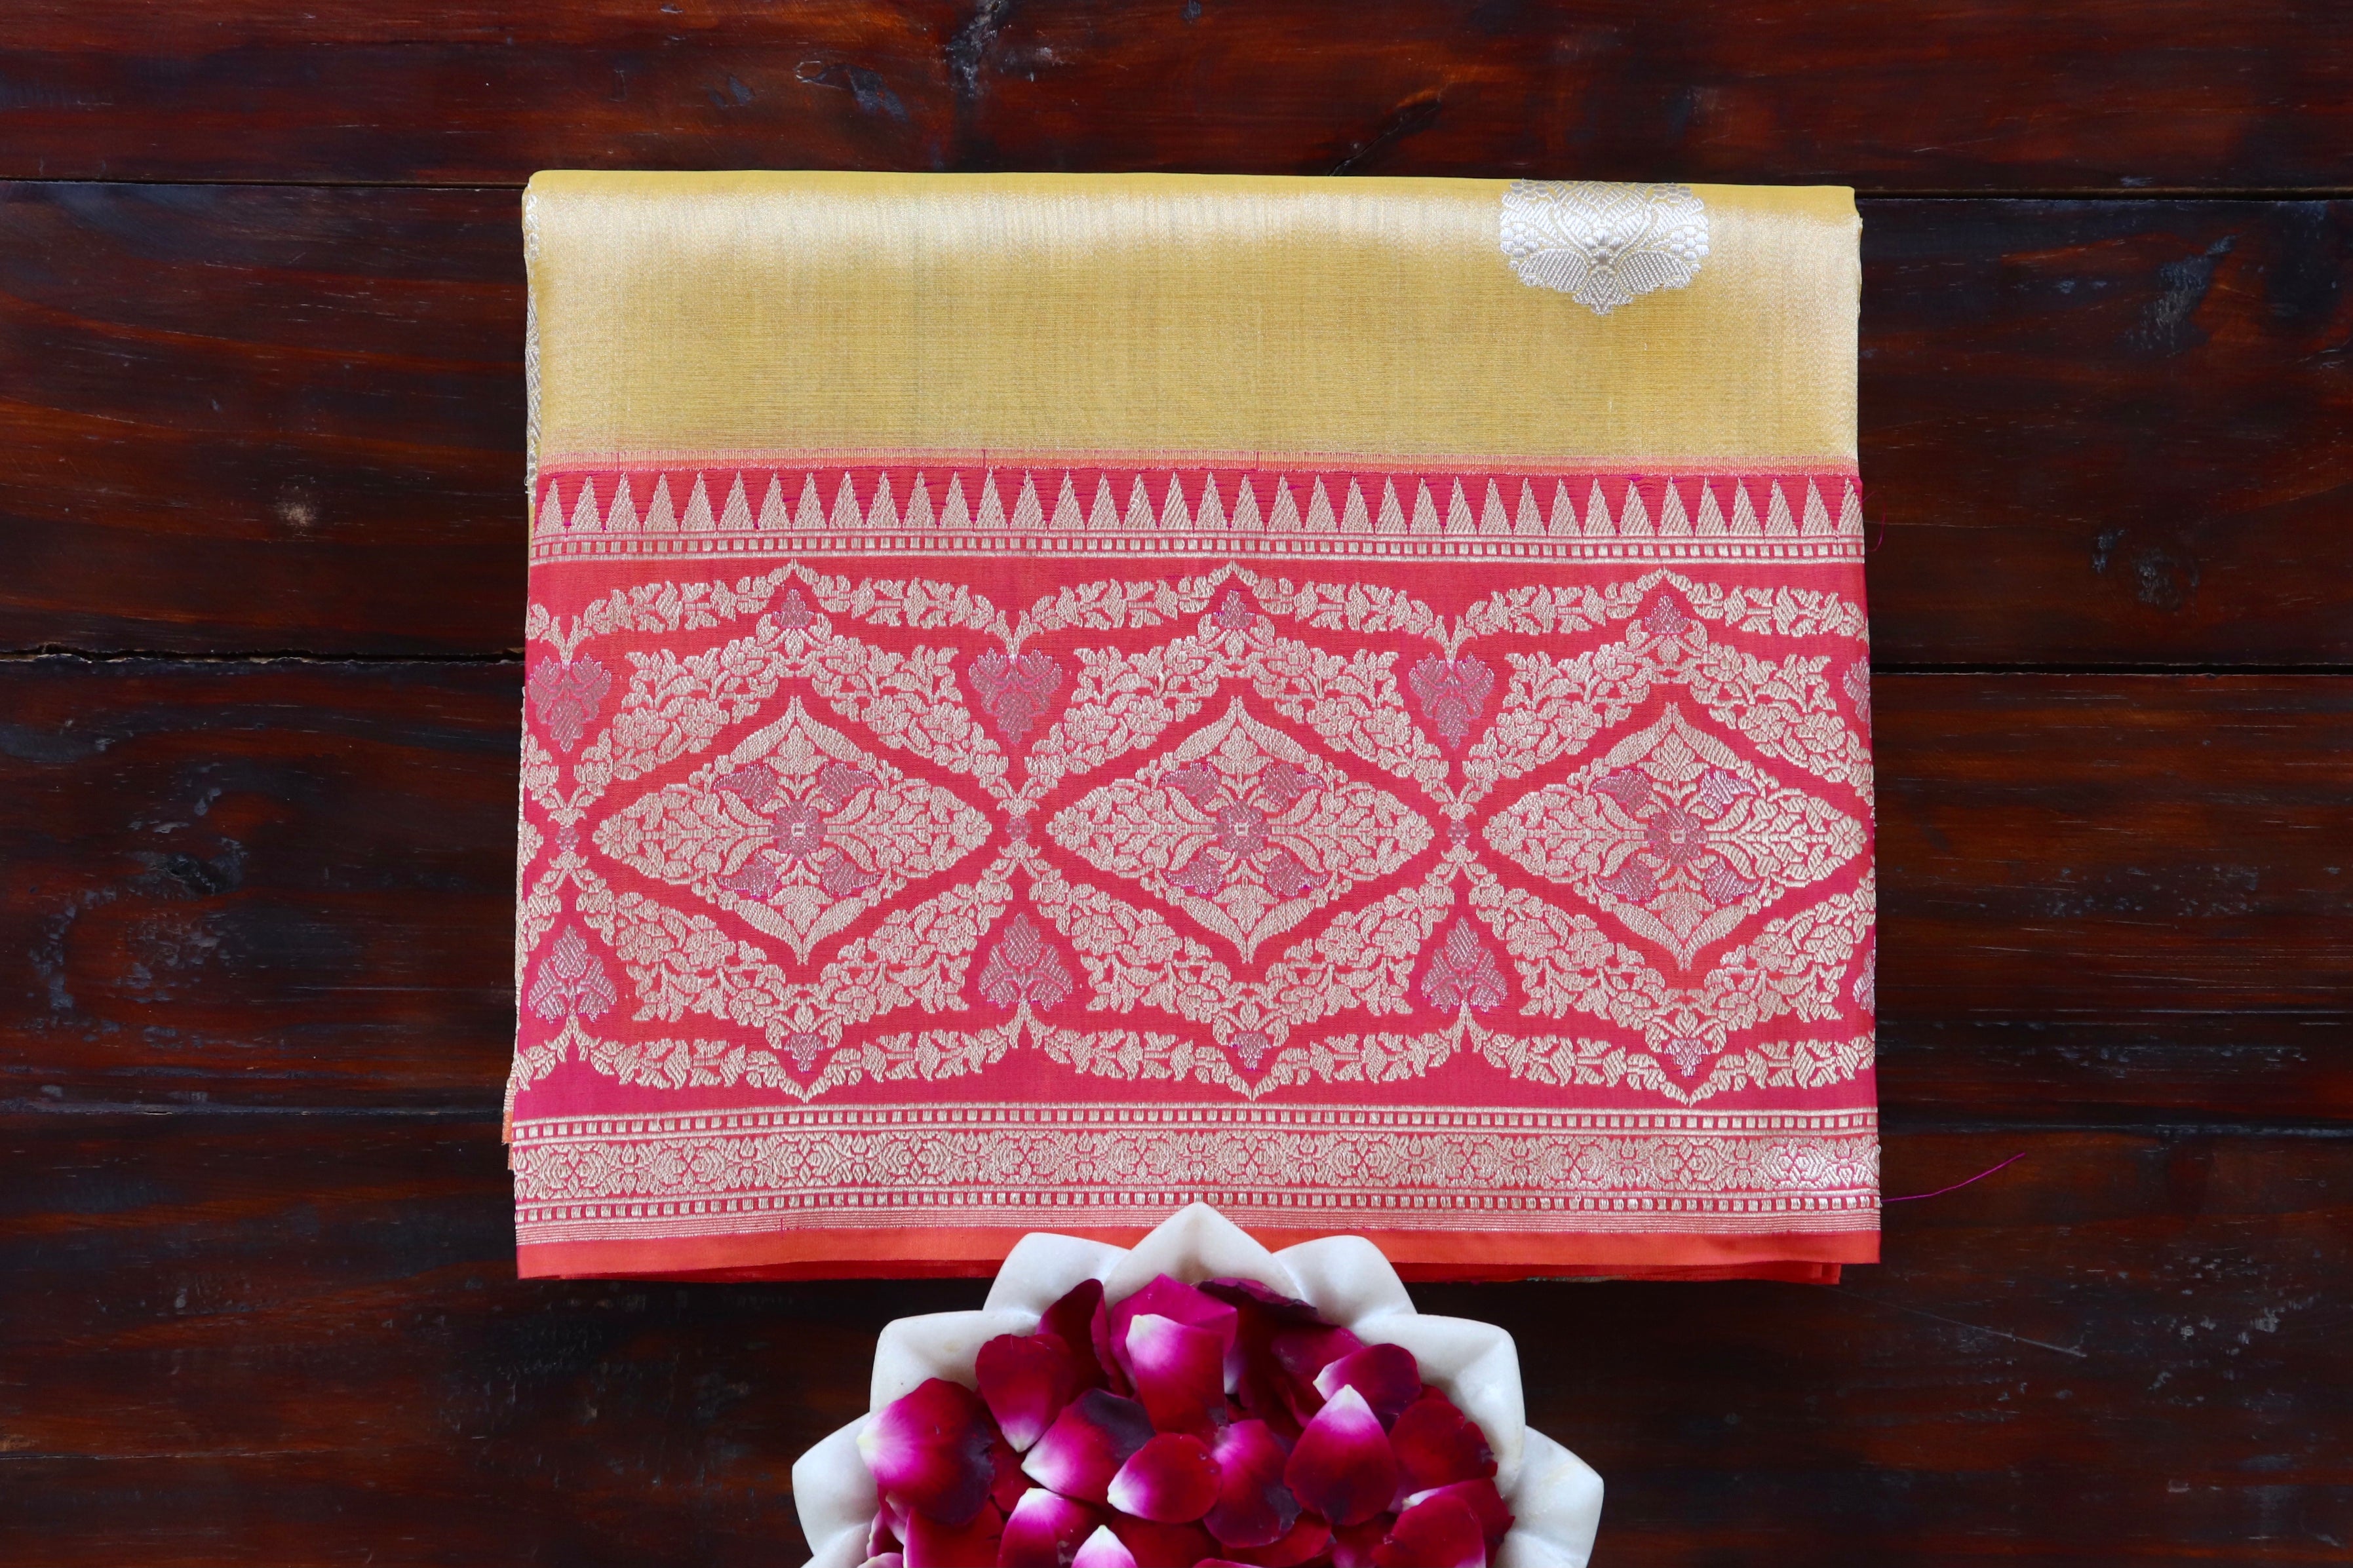 Gold & Red Sona Rupa Pure Silk Handloom Banarasi Saree